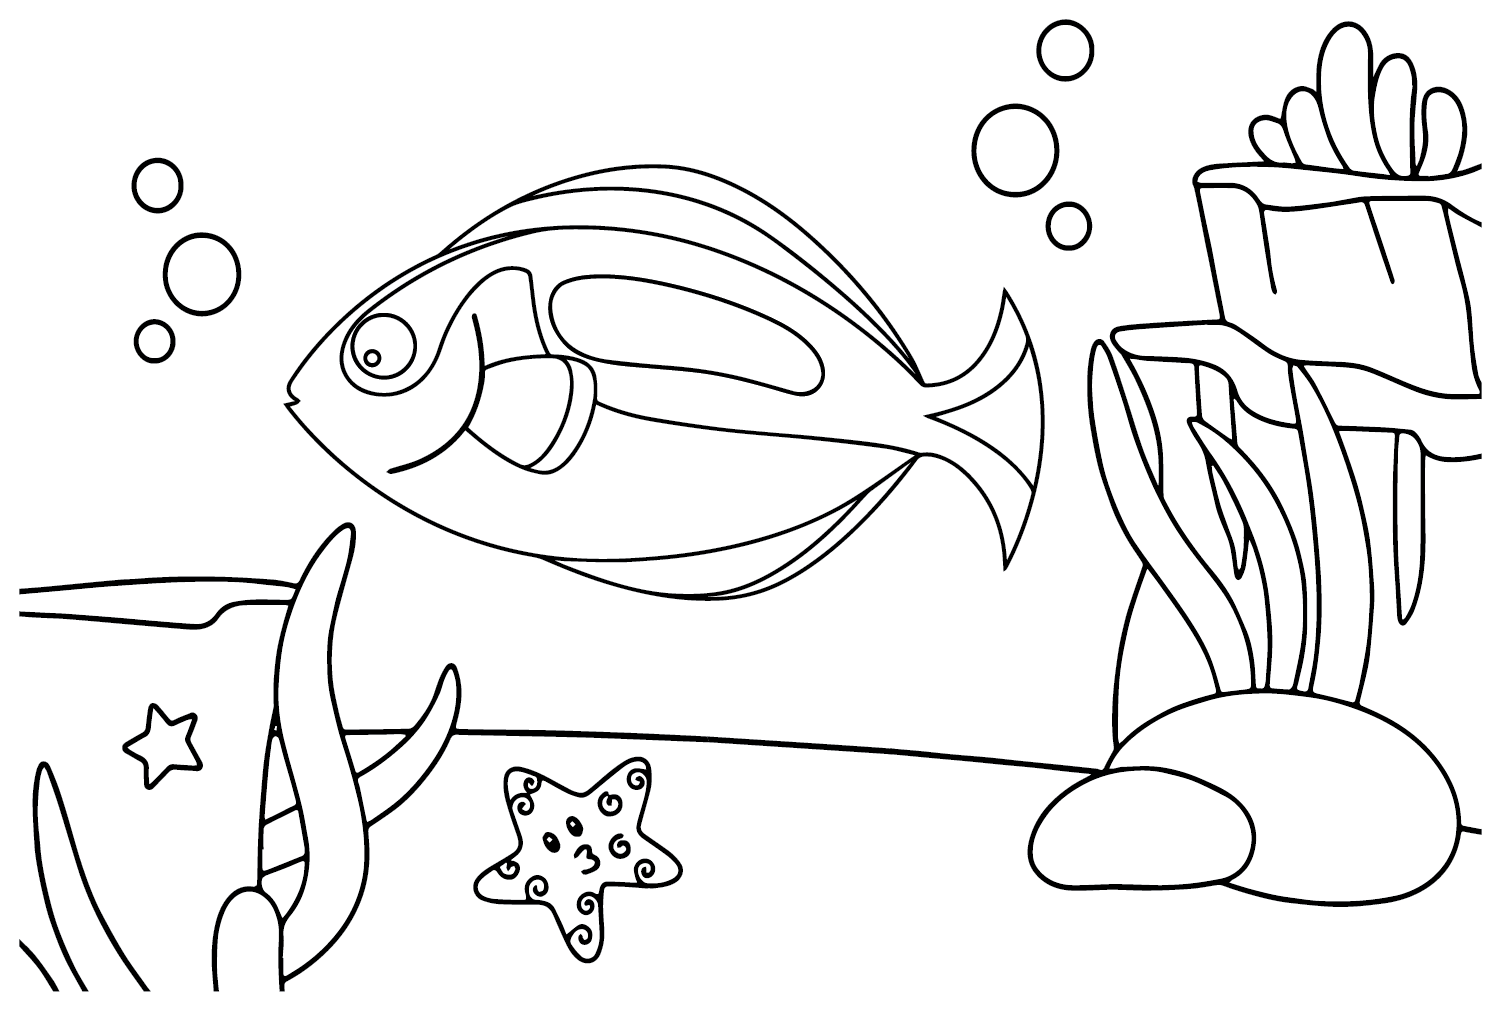 Drawing Tang Fish from Tang Fish